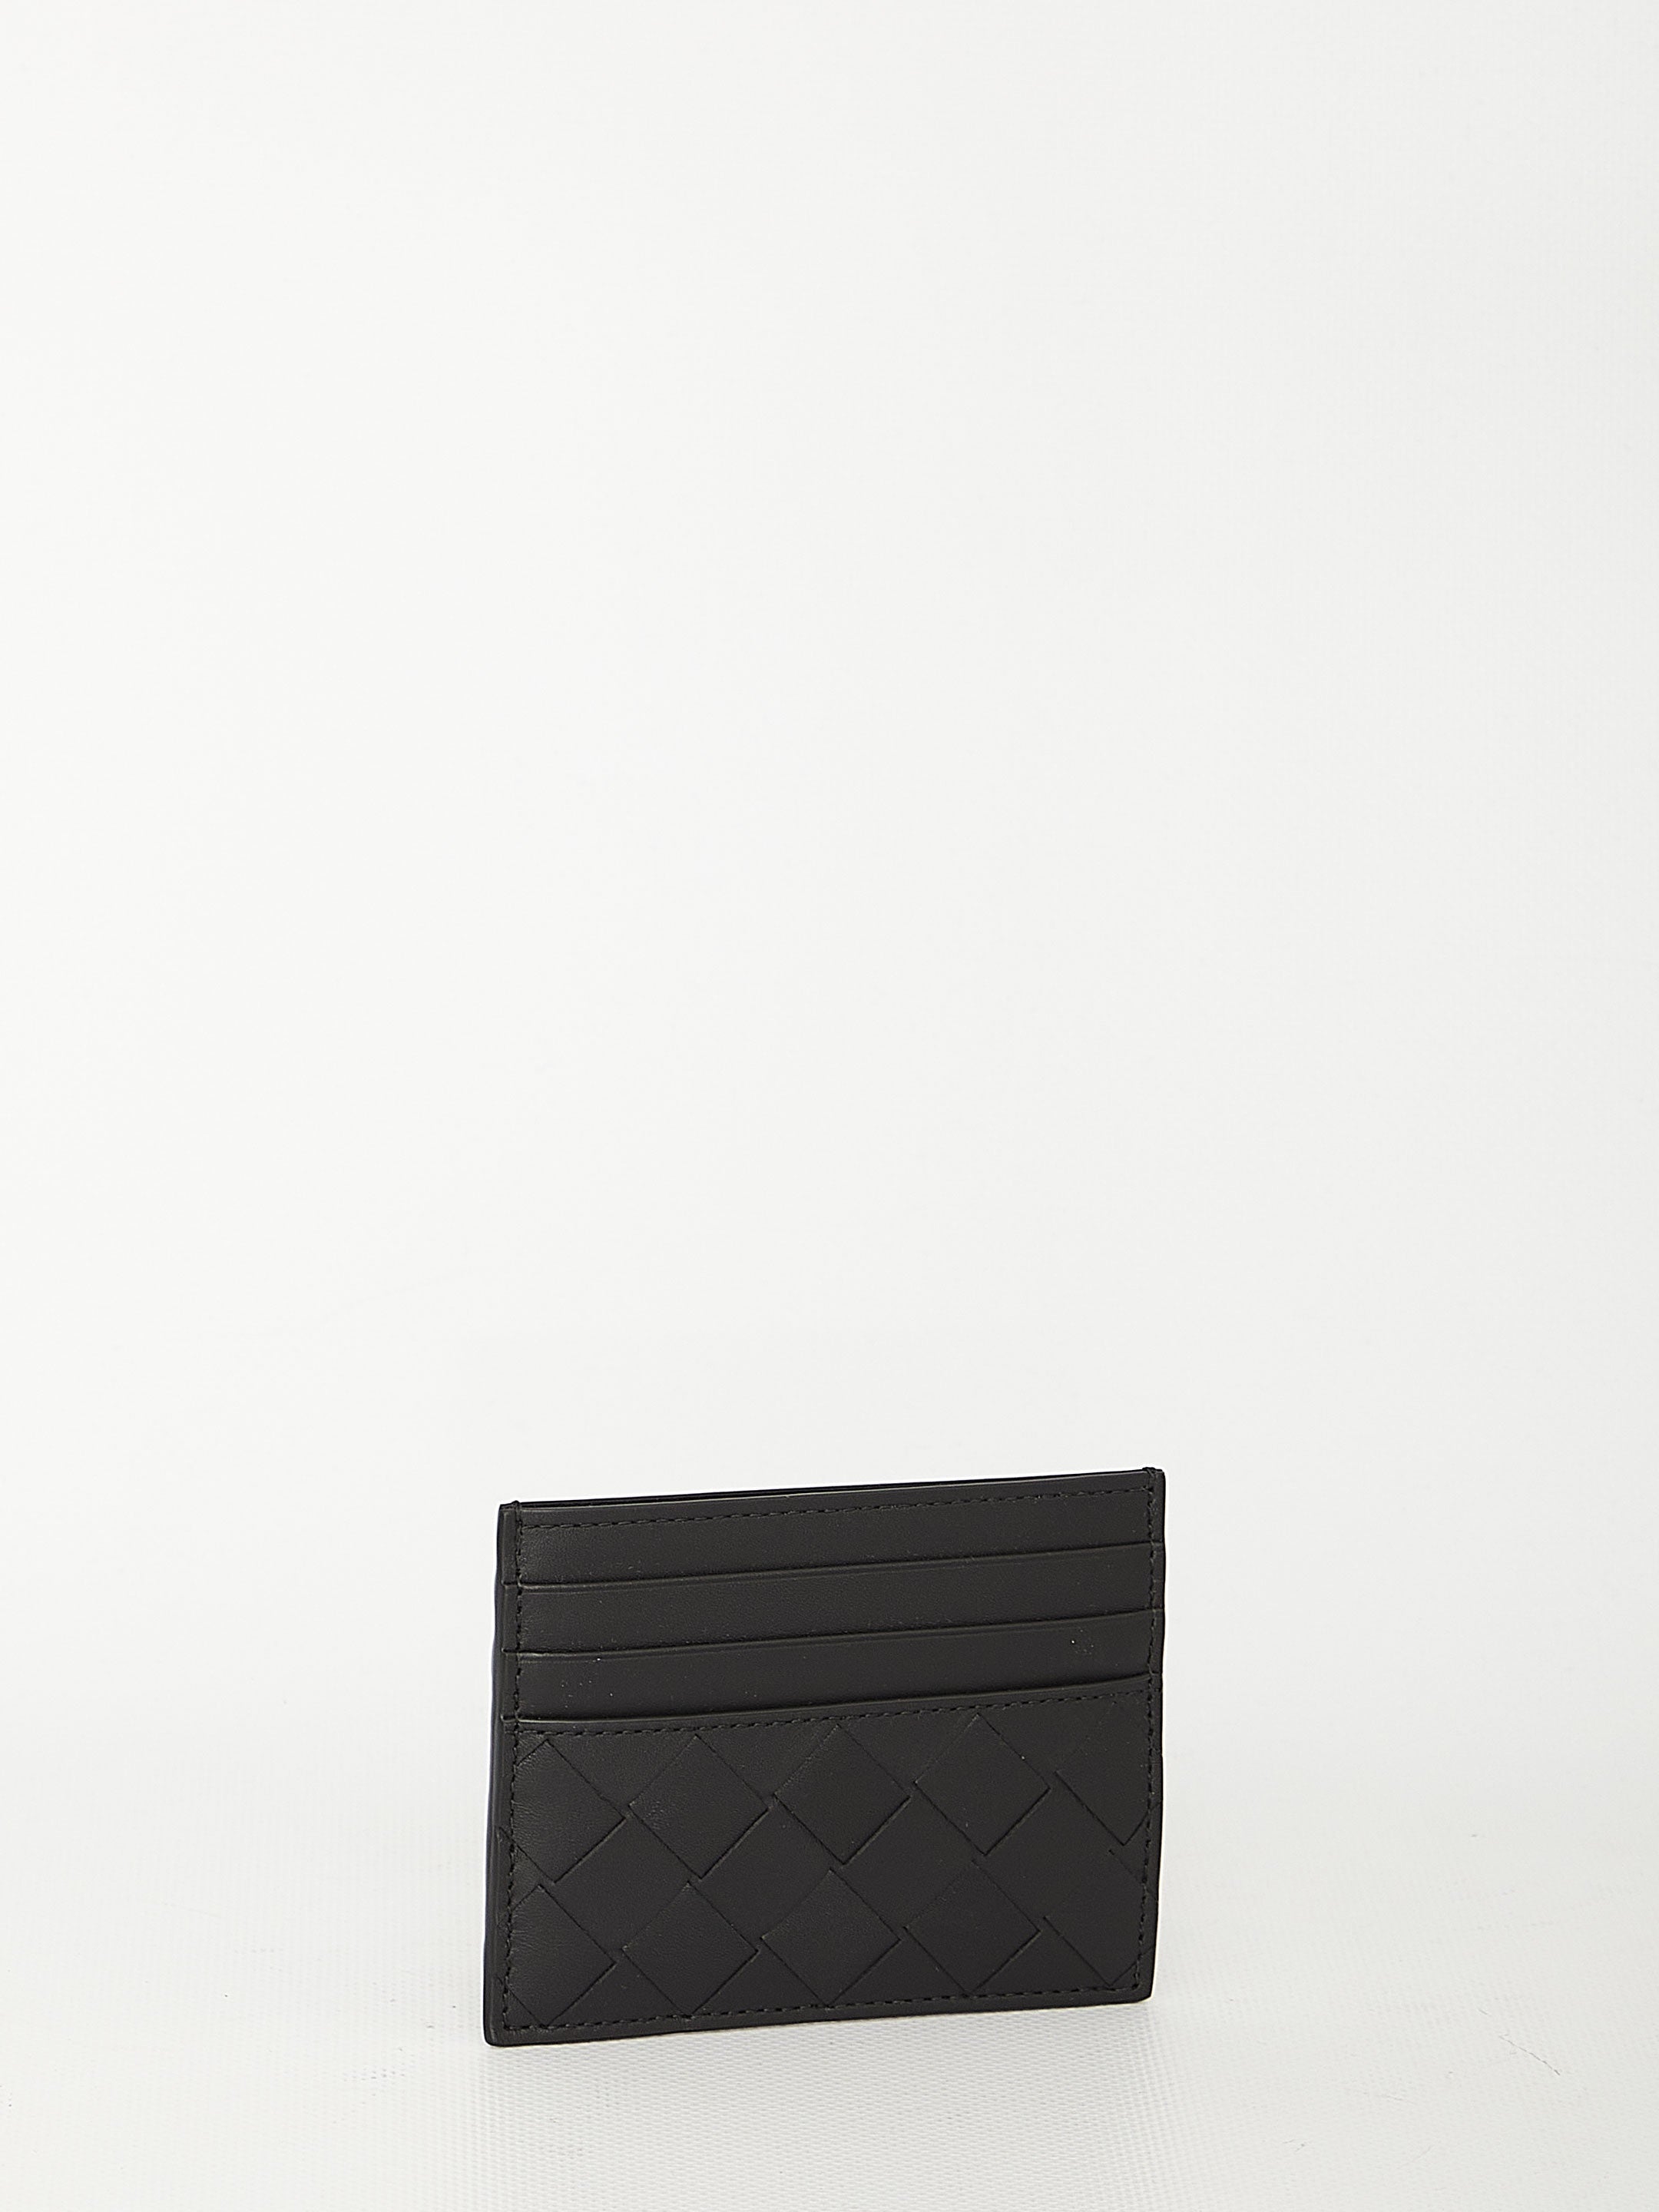 BOTTEGA-VENETA-OUTLET-SALE-Black-leather-cardholder-Taschen-QT-BLACK-ARCHIVE-COLLECTION-2.jpg